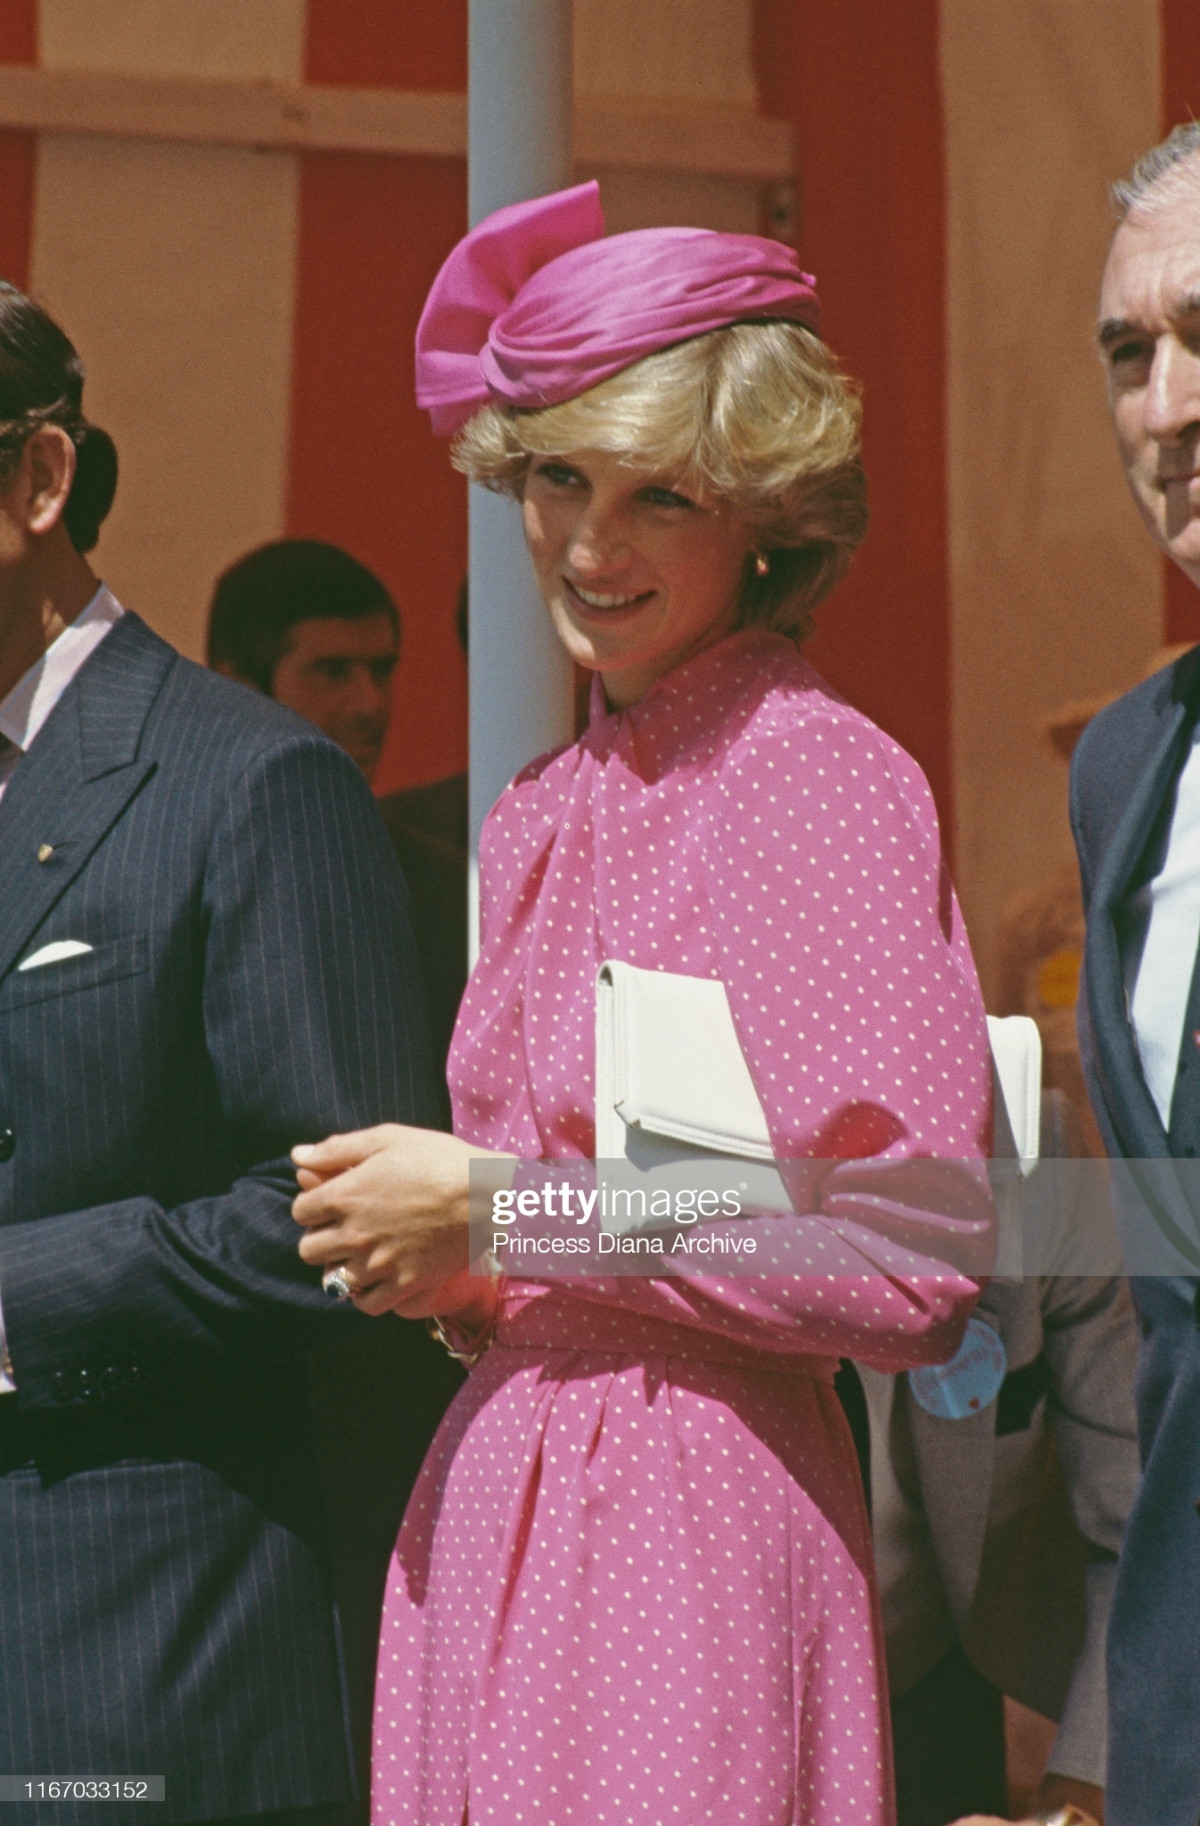 Công nương Diana Diện trang phục màu hồng quý phái, thanh lịch khó sánh - 3